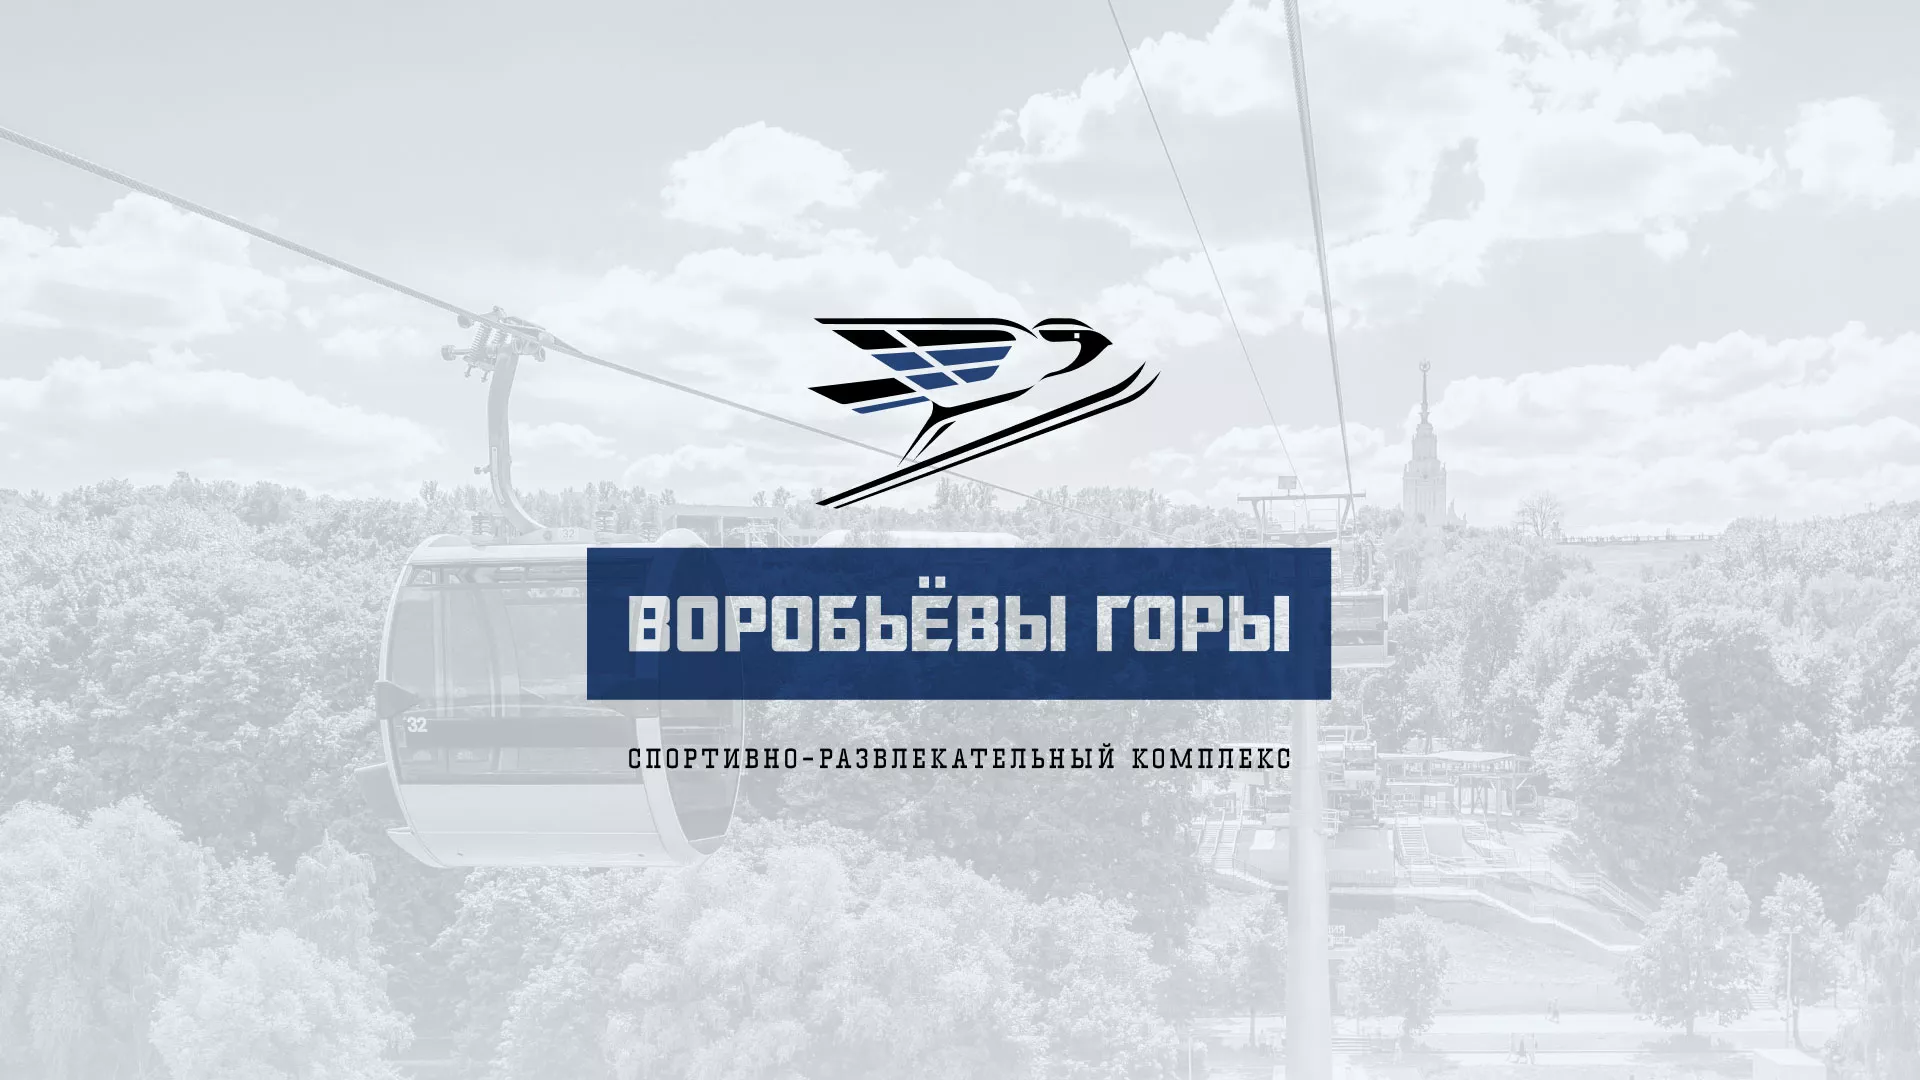 Разработка сайта в Новокузнецке для спортивно-развлекательного комплекса «Воробьёвы горы»